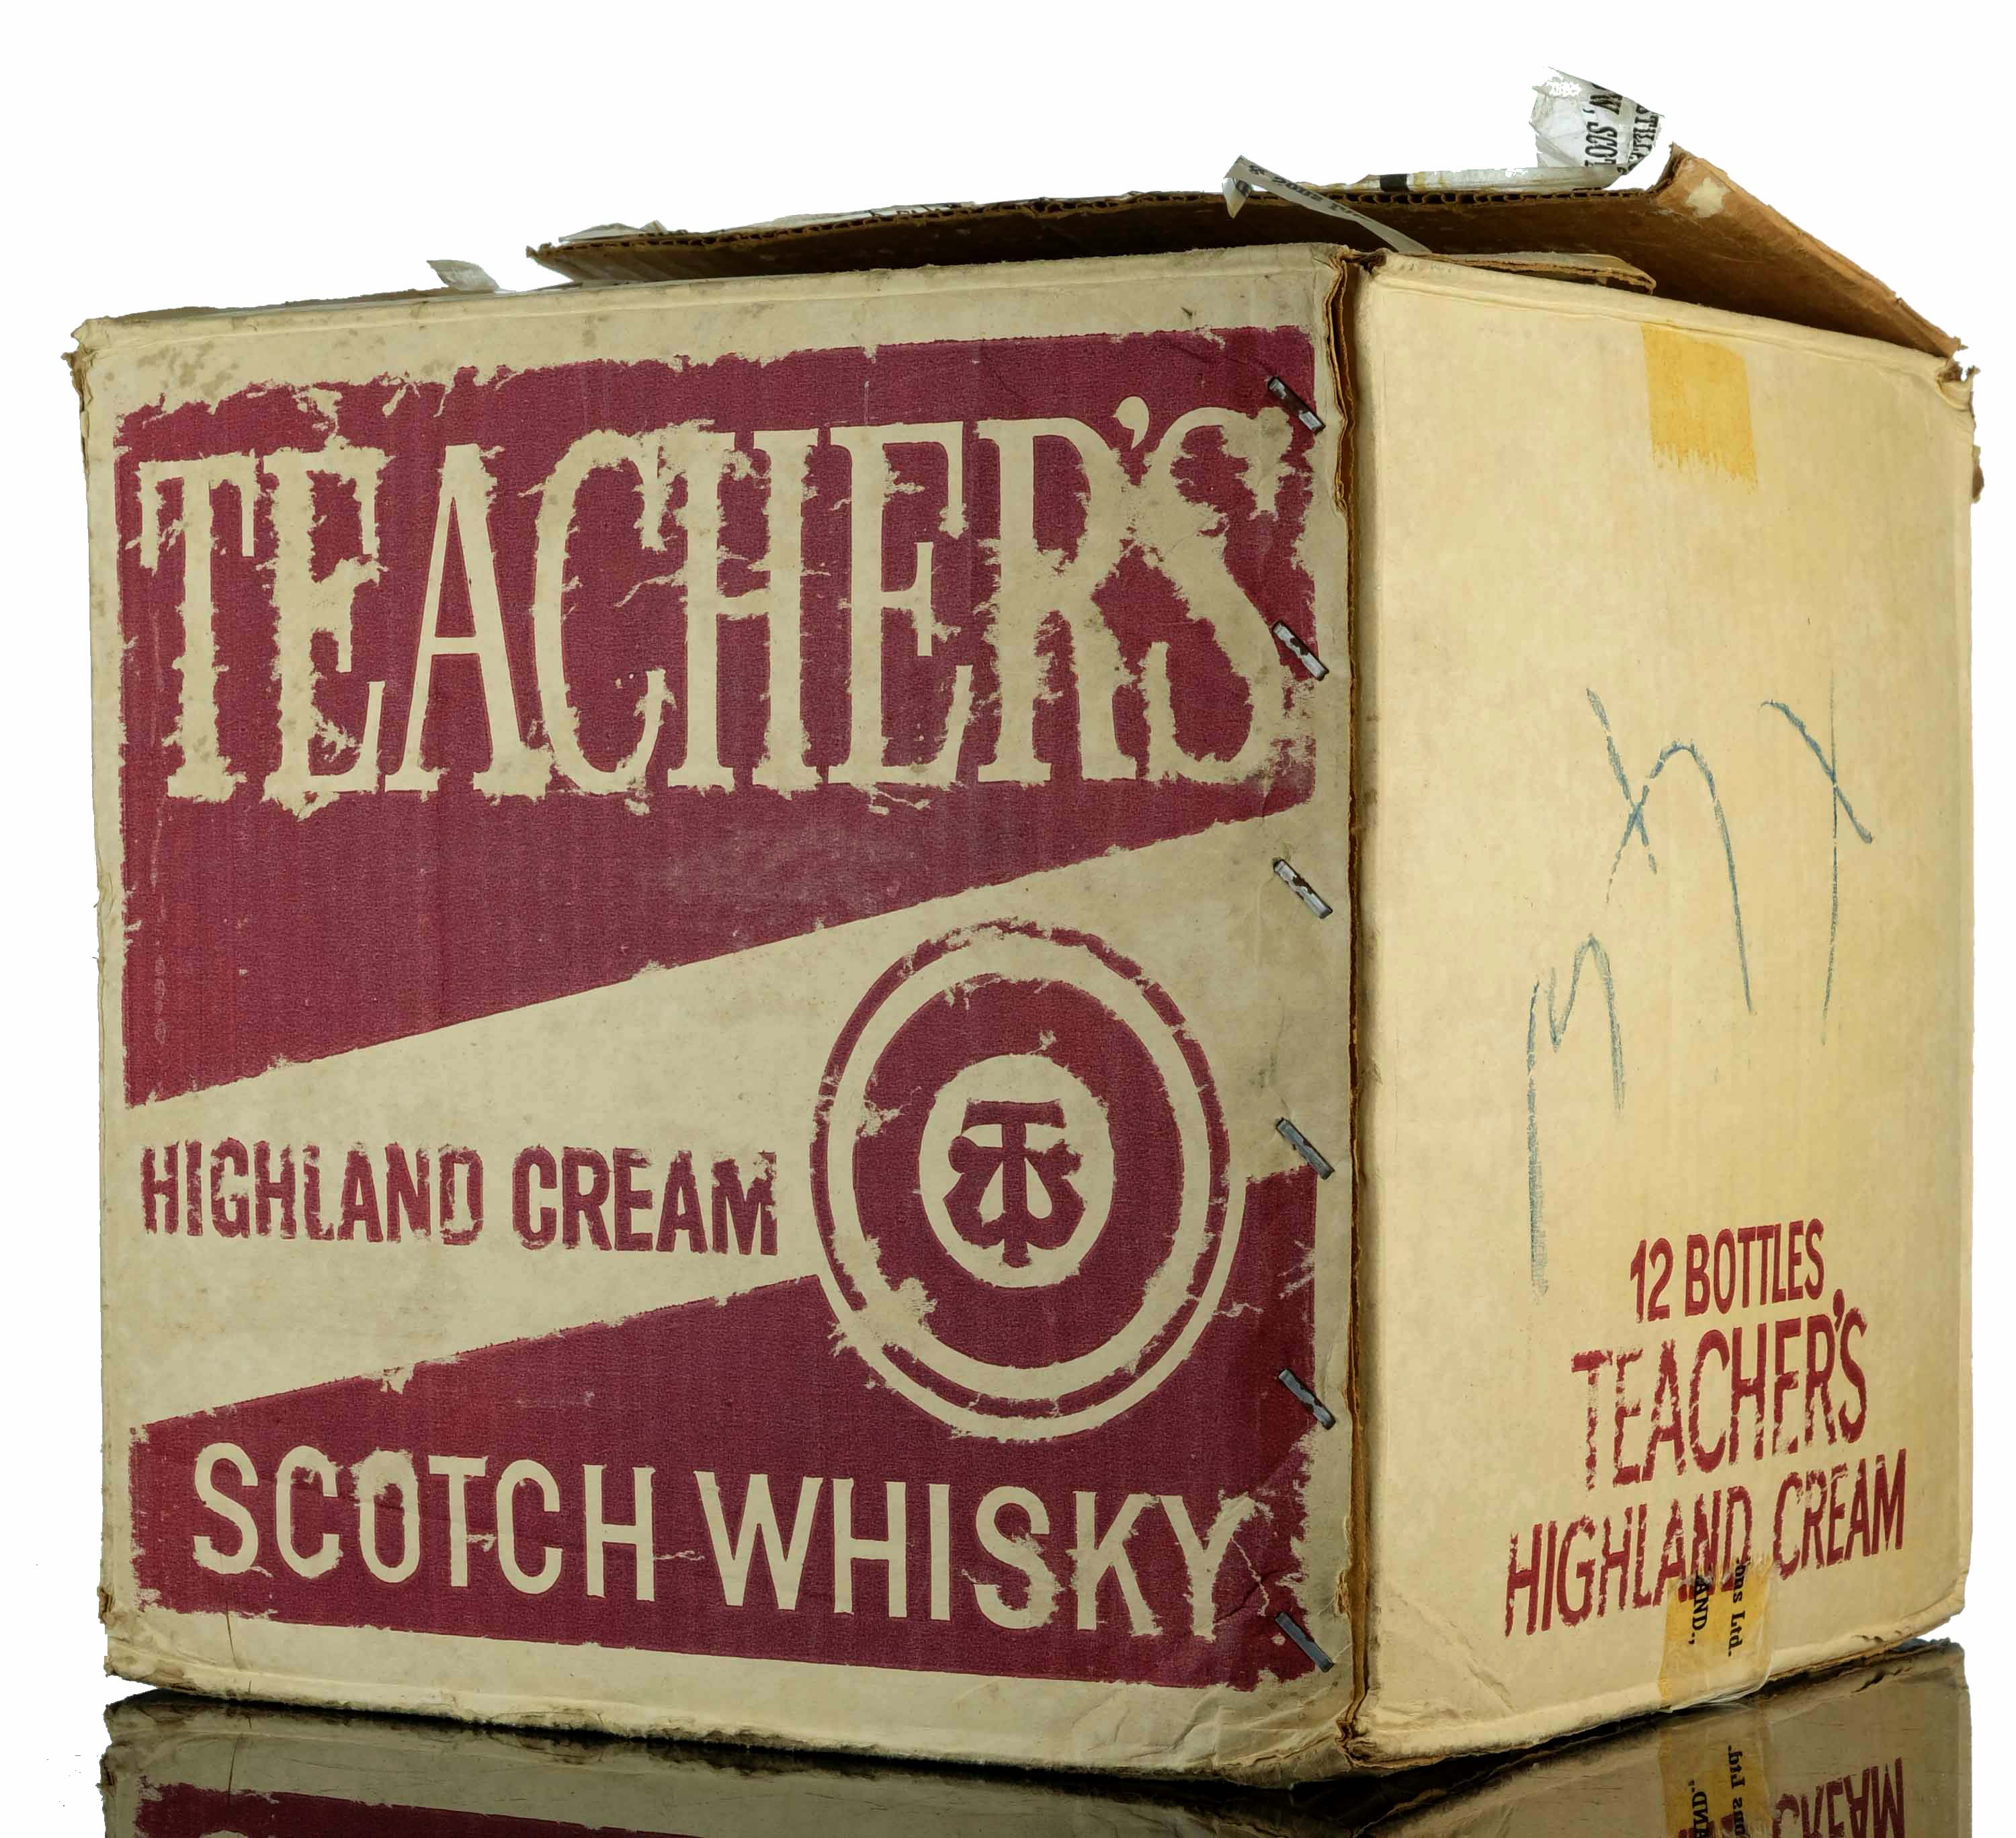 One Full Case Teachers Highland Cream - 1970s